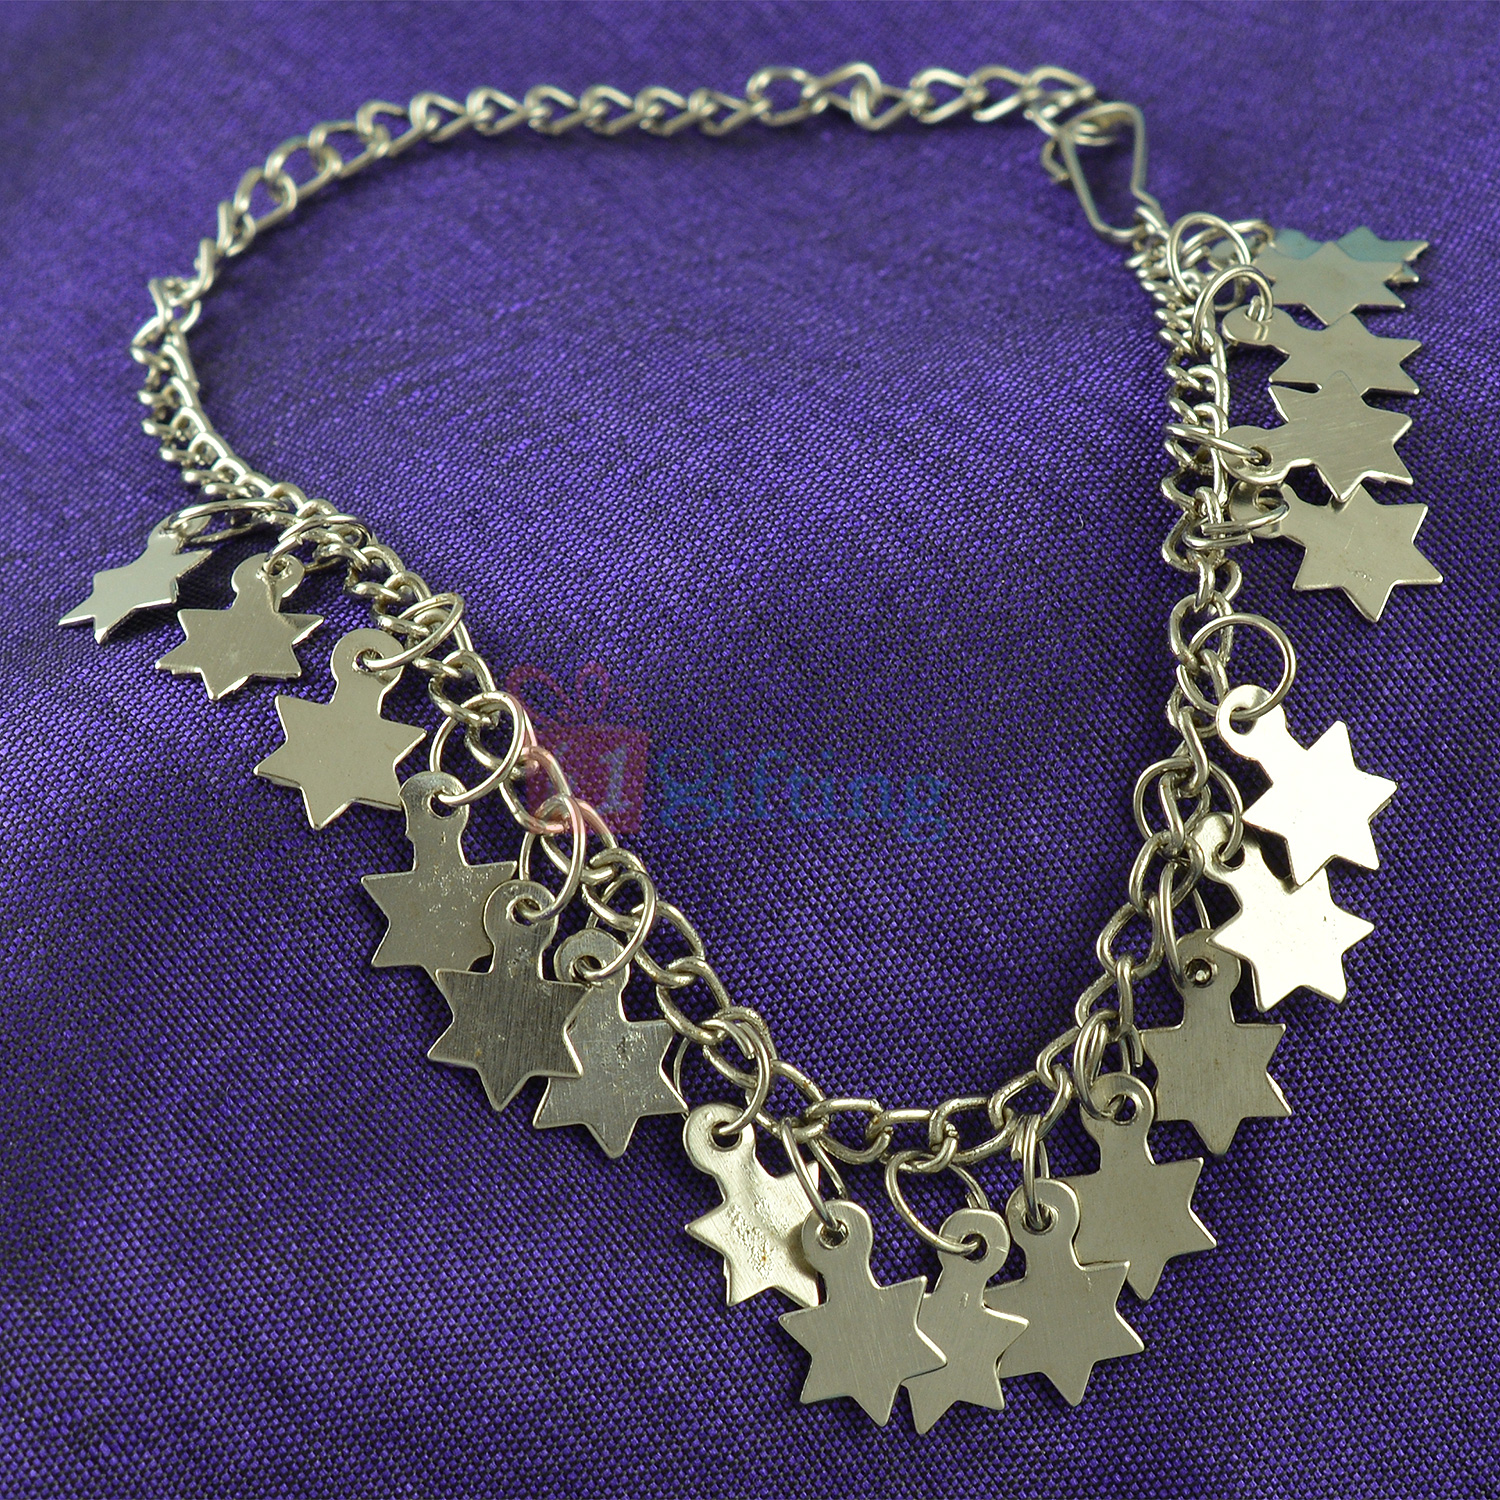 Full of Silver Stars Designer Classic Bracelet